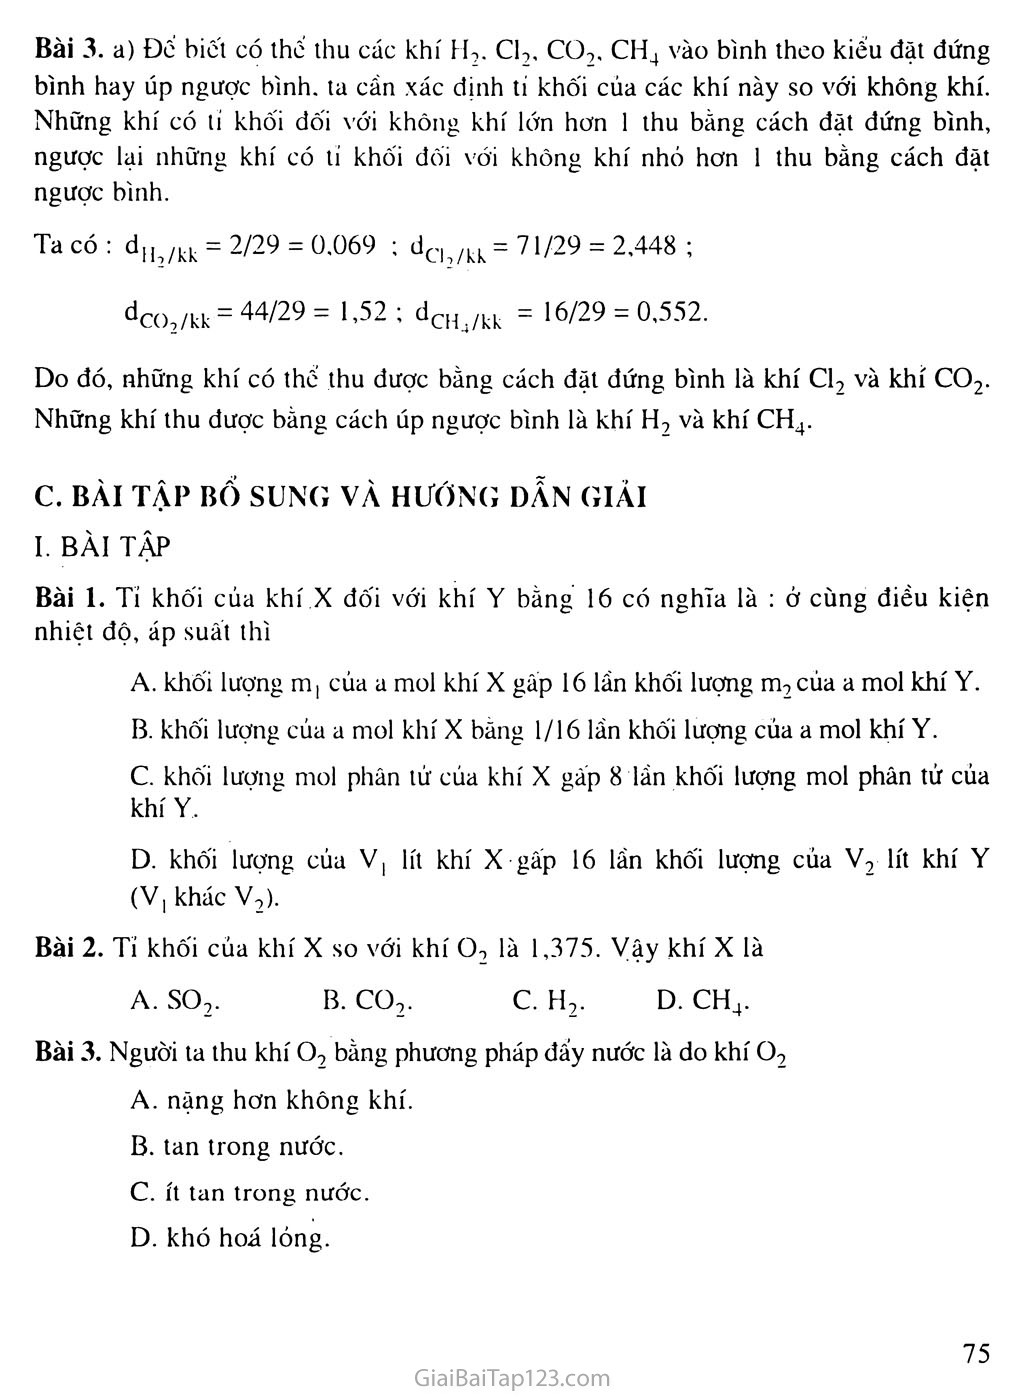 Bài 20: Tỉ khối của chất khí trang 3